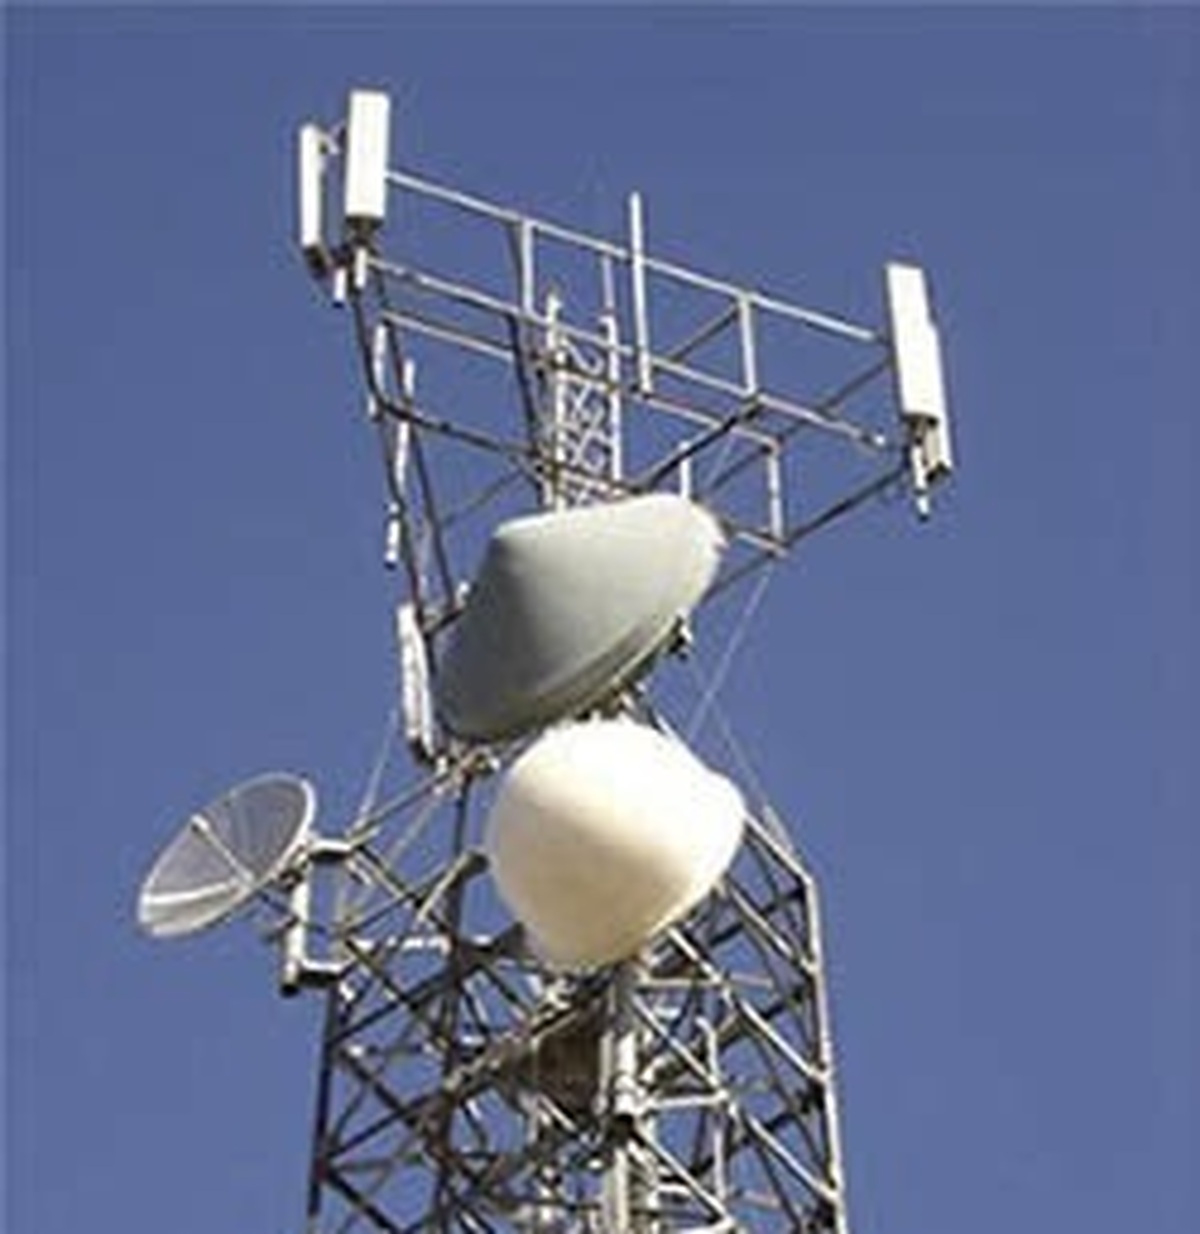 نصب وراه اندازی سایت جدید تلفن همراه اول در روستای سورگلم یکدارشهرستان جاسک انجام شد.